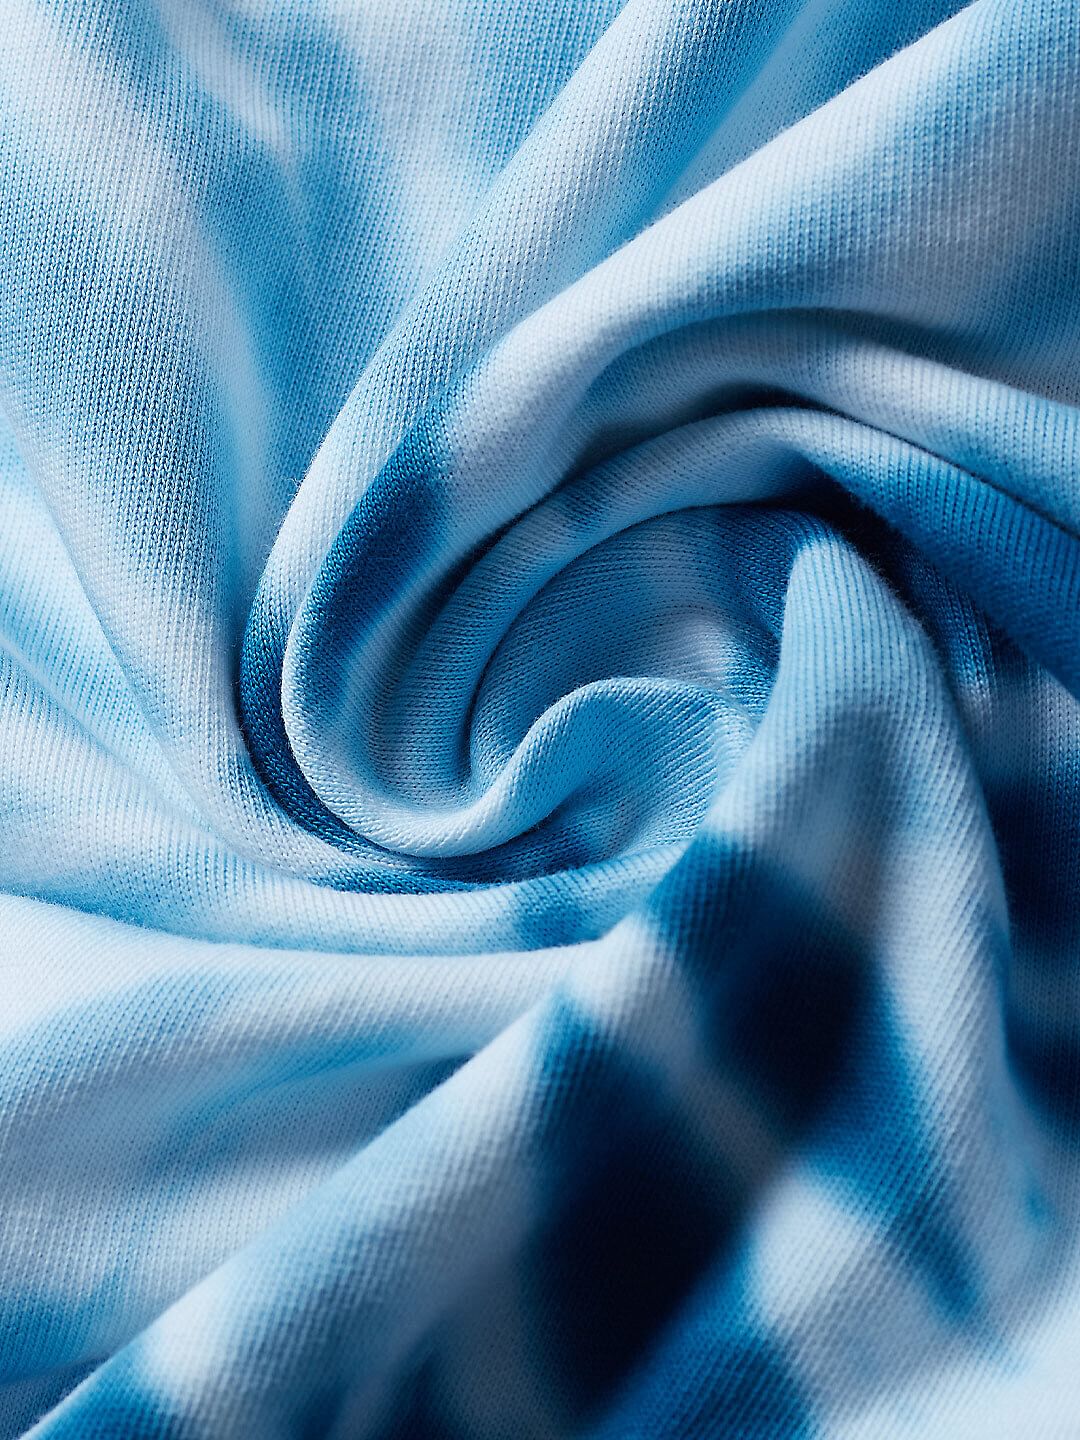 Tie Dye: Blue Spiral Vortex